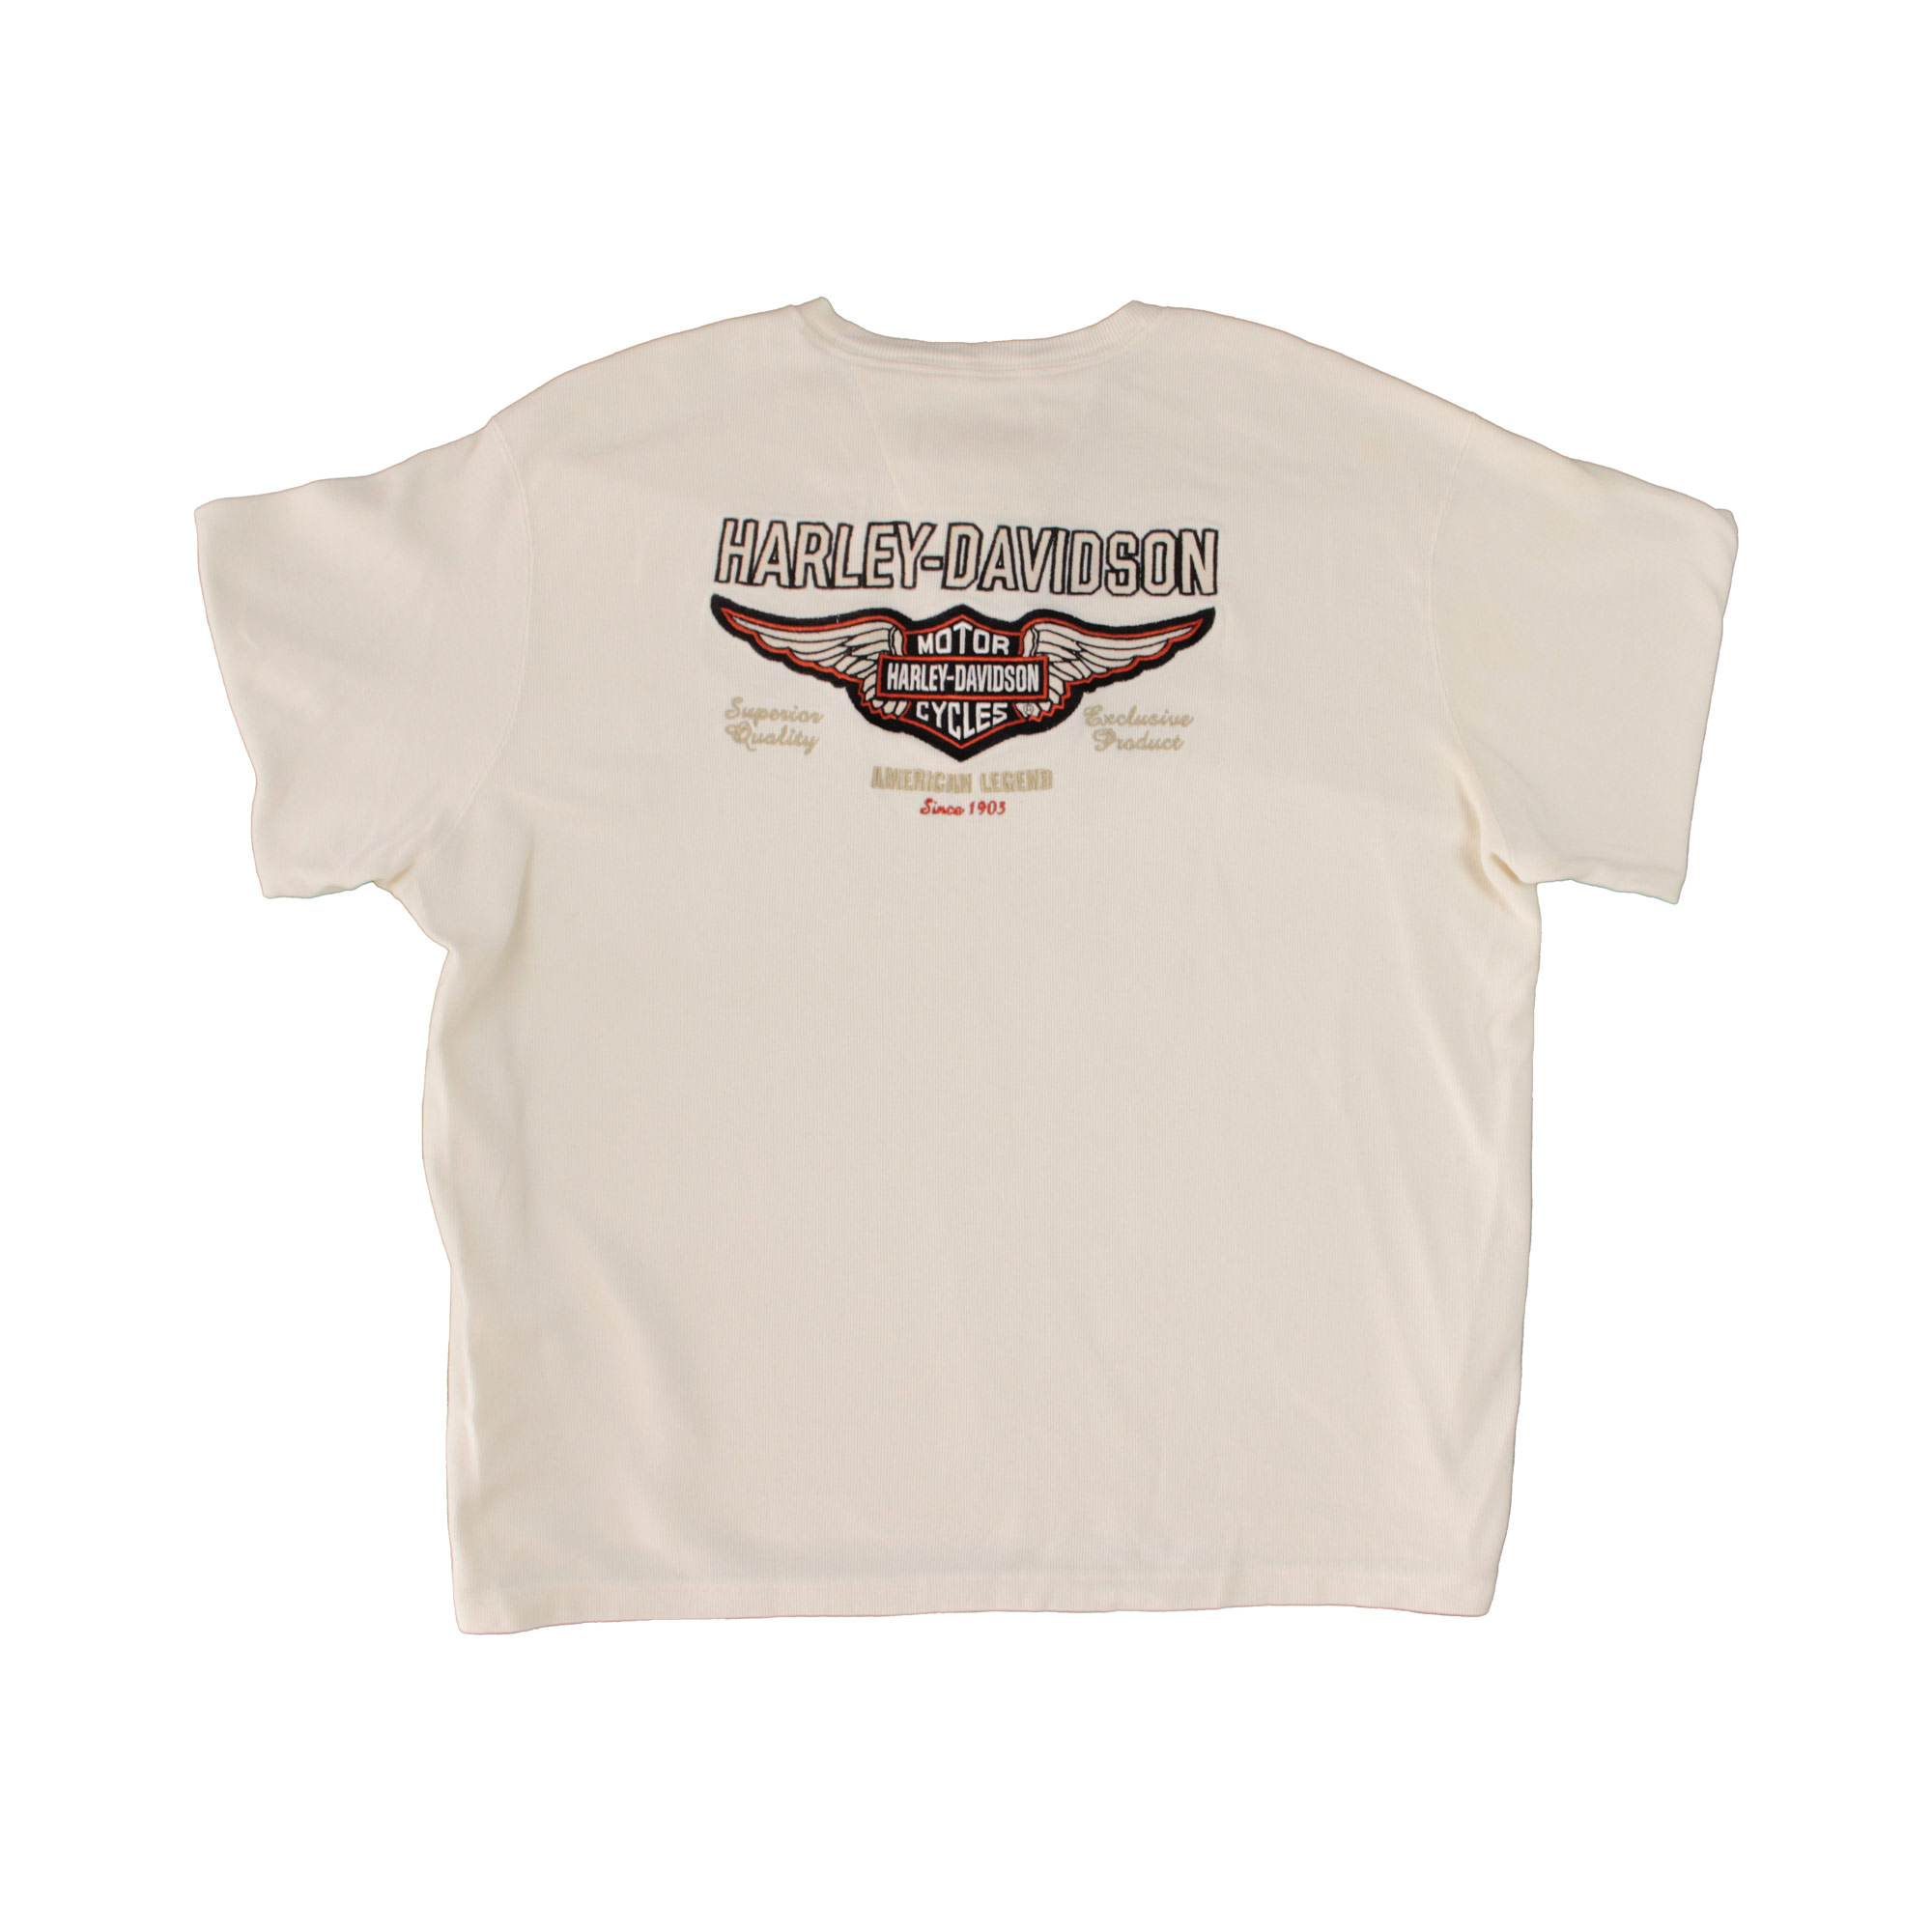 Harley Davidson Embroidered Sweatshirt - XL